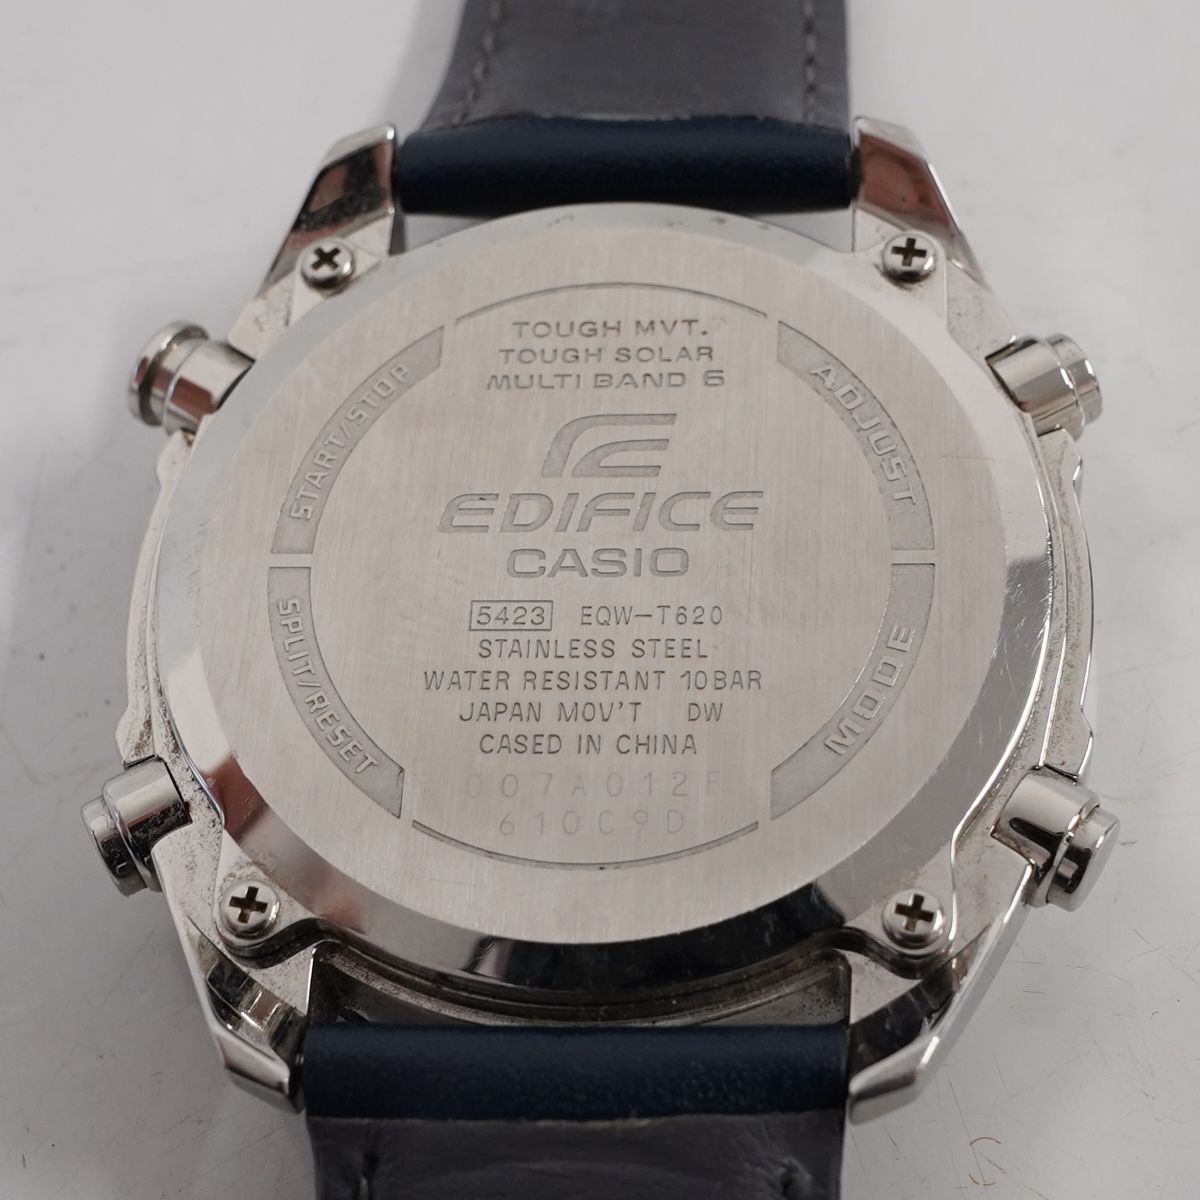 CASIO EDIFICE エディフィス 腕時計 USED美品 EQW-T620 電波ソーラー